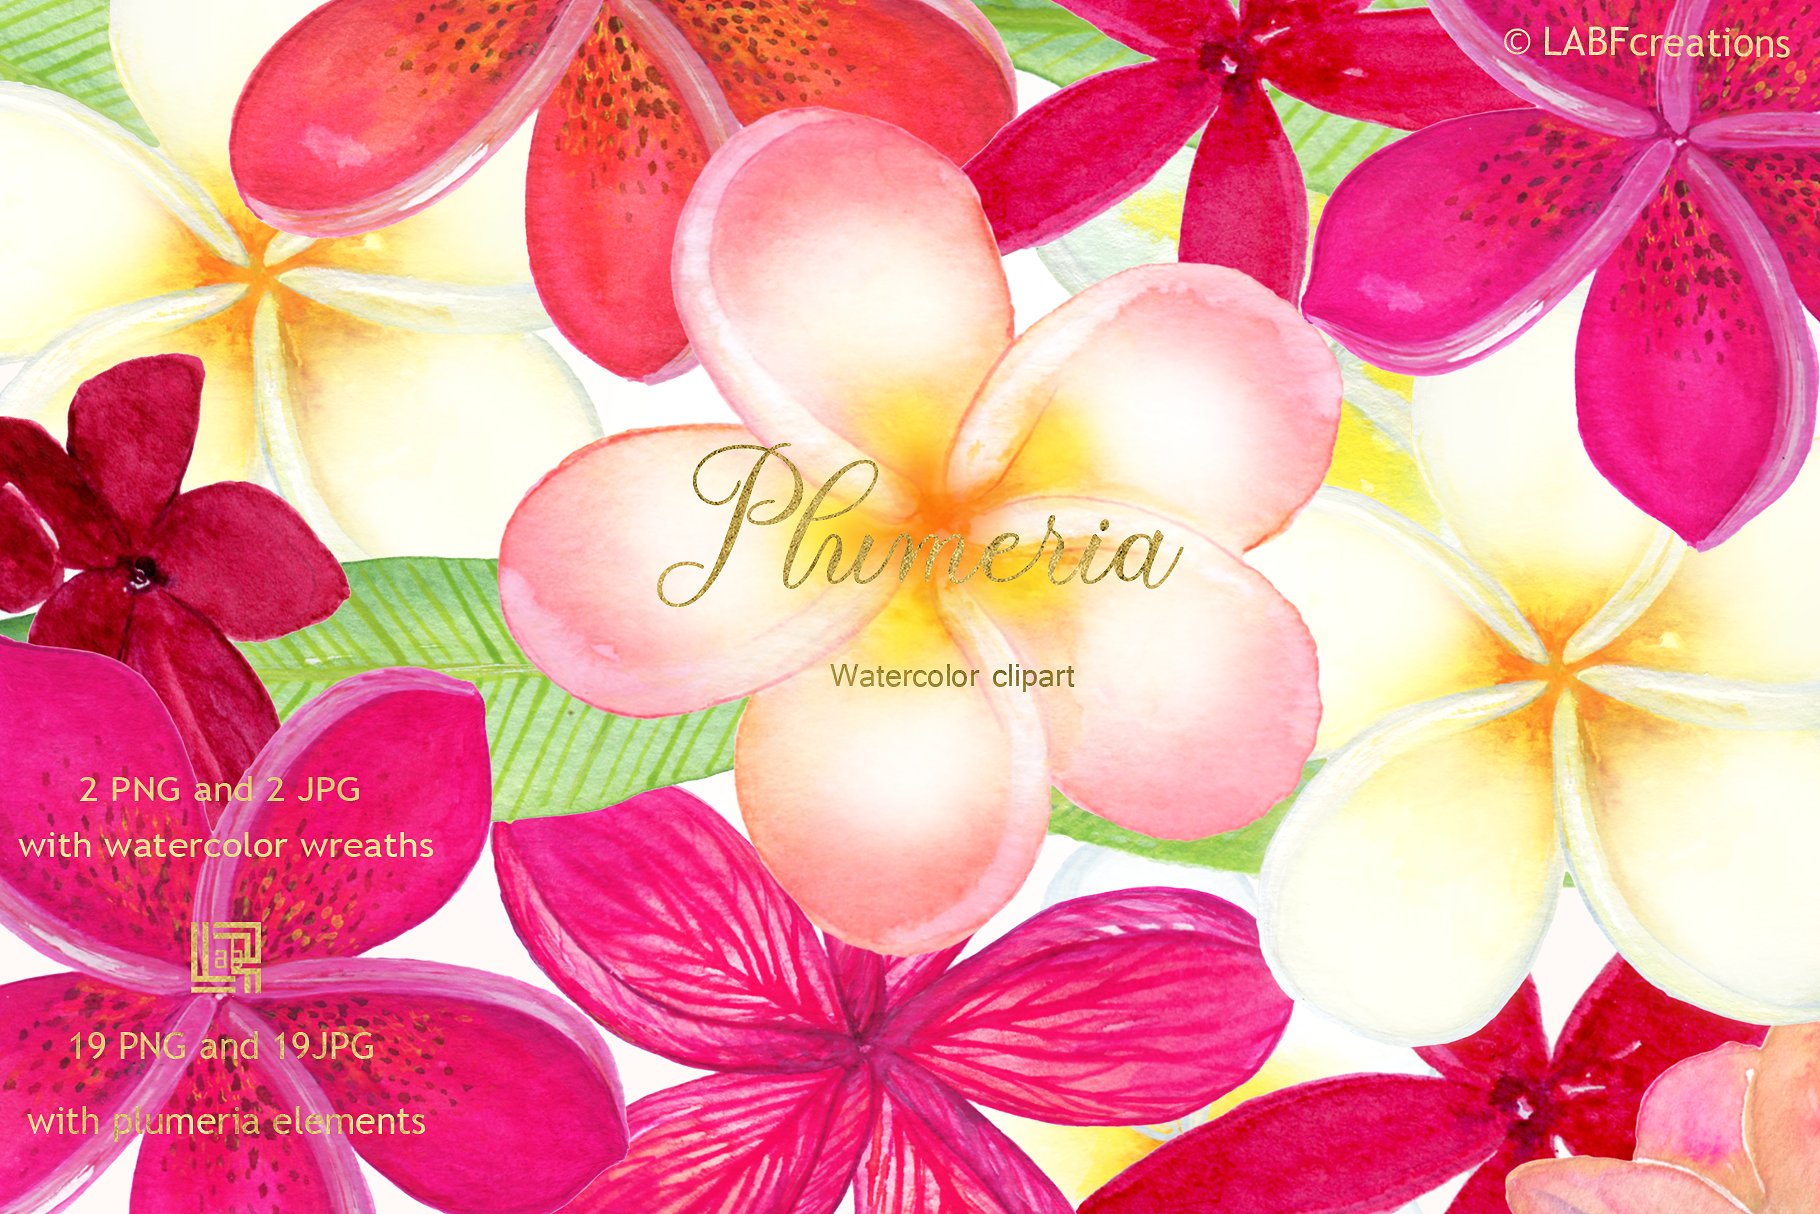 柔和优雅的手绘水彩热带花卉剪贴画 Plumeria Tropical watercolor flowers插图(3)